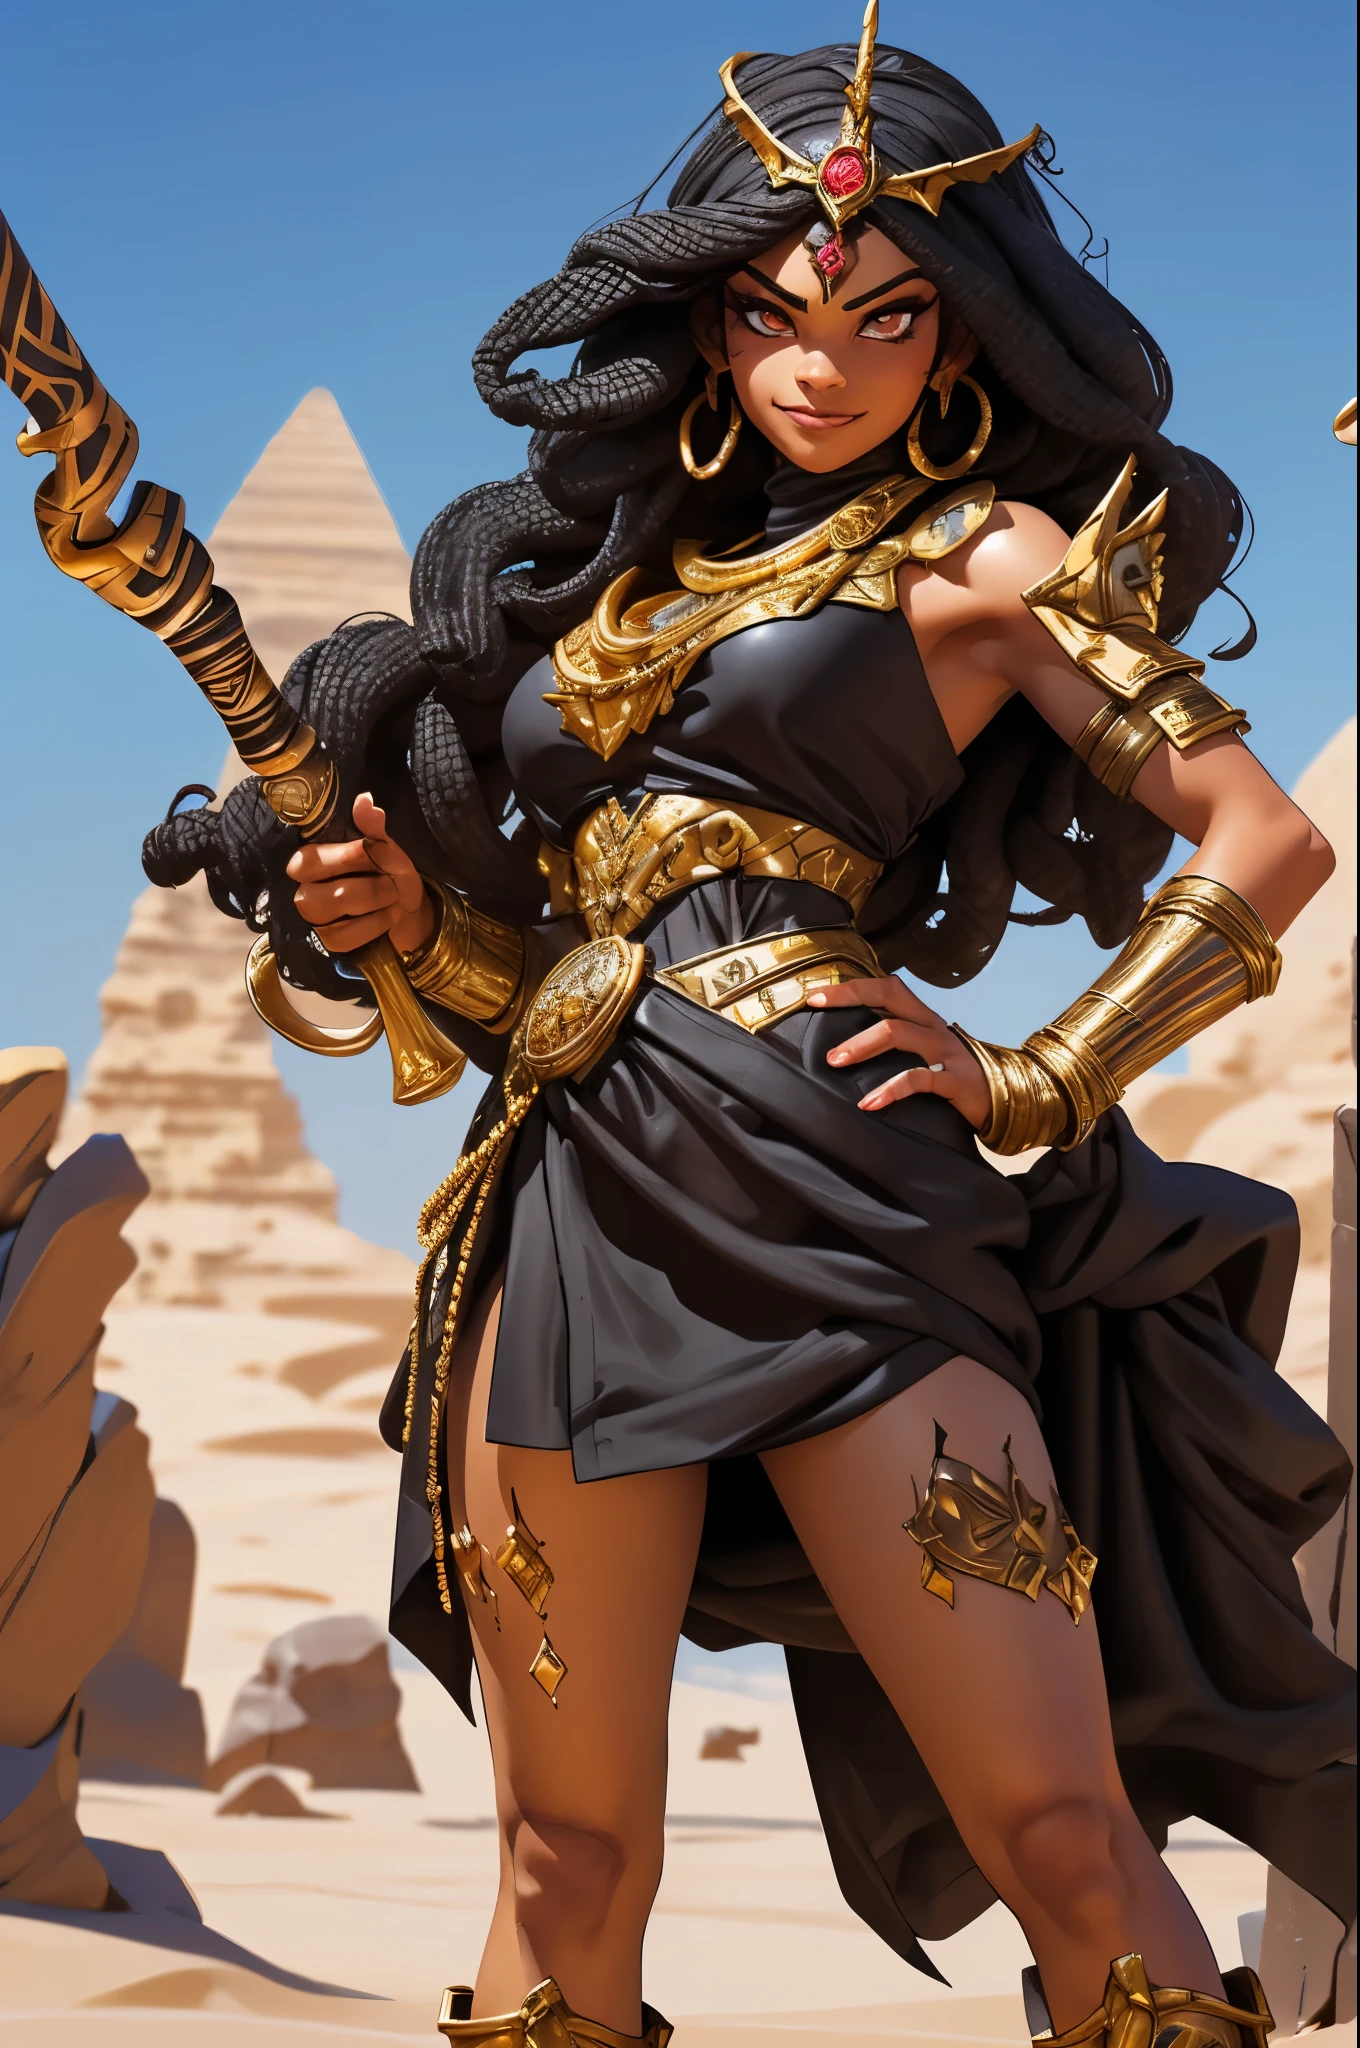 (ผลงานชิ้นเอก, คุณภาพดีที่สุด, ความละเอียดสูง) นักรบหญิงชาวอียิปต์ผิวดำตัวสูง 1 คน มีผมสีดำหยิกและดวงตาสีทอง, ชุดเกราะอารบิกสีแดงและสีทอง, ยิ้มเล็กน้อย, ปกคลุมไปด้วยรอยสัก, ยืนอยู่ในทะเลทราย, พร้อมที่จะสู้; ท่าแอ็คชั่น, มุมไดนามิก, แฟนตาซี